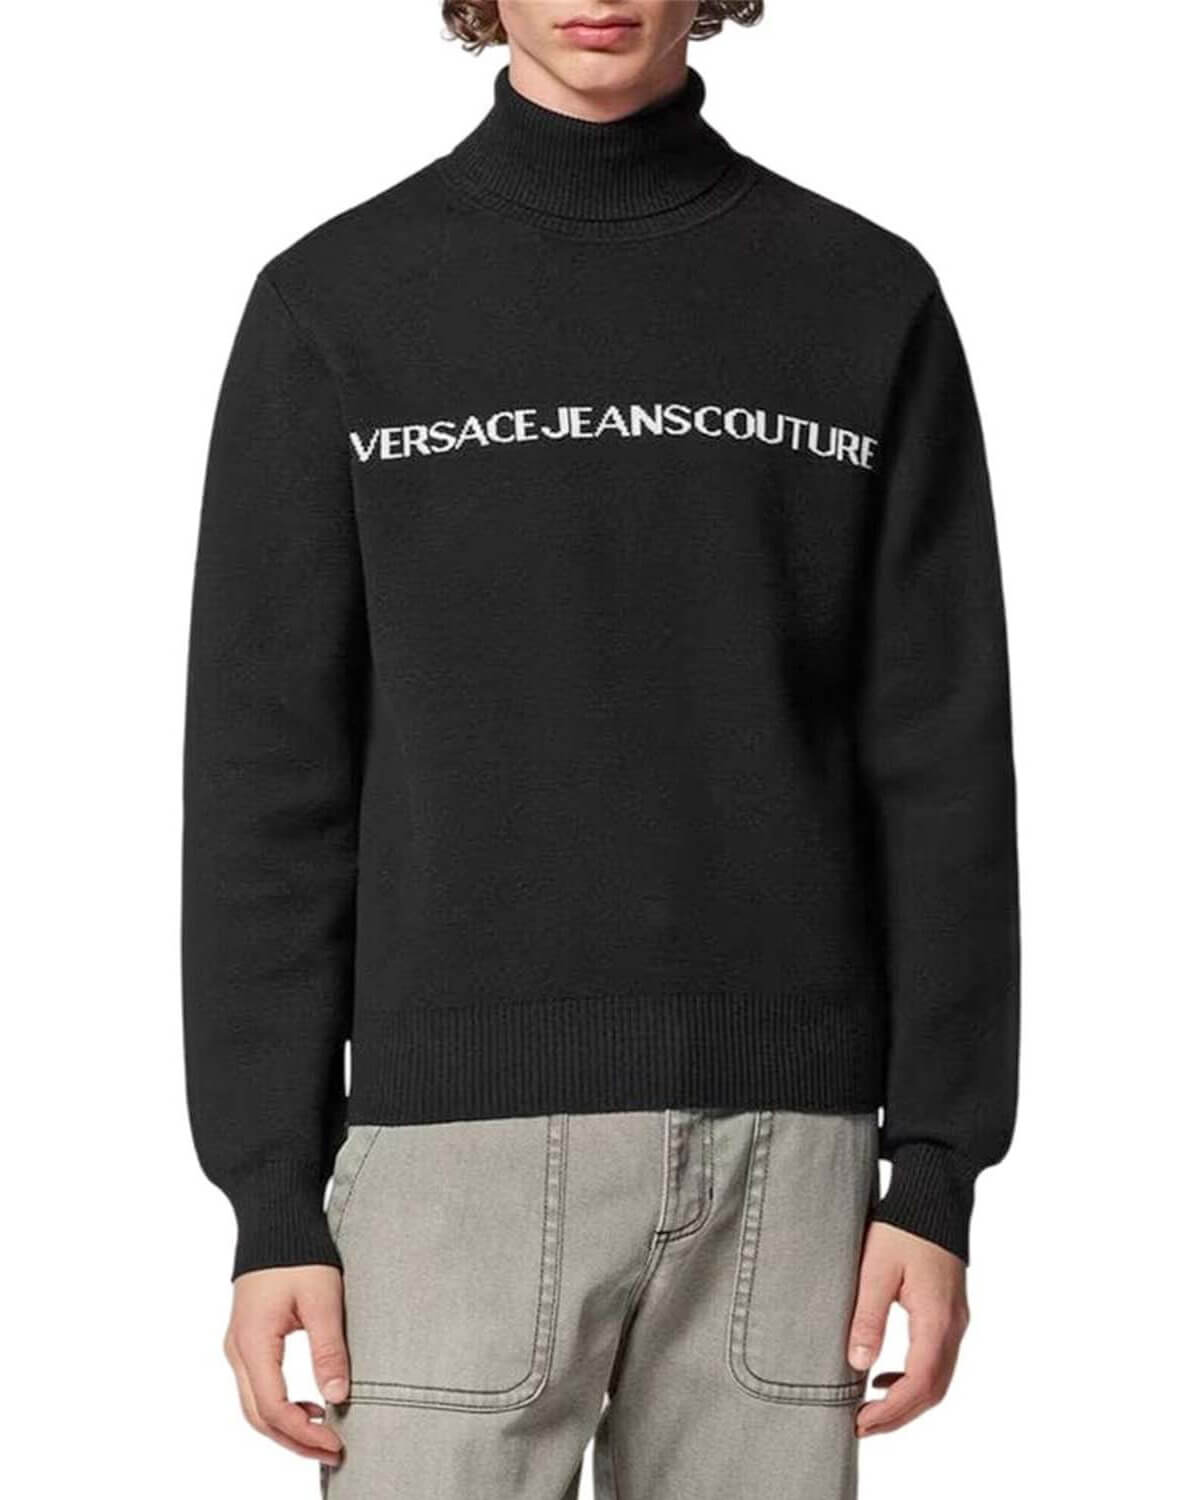 Ανδρική Πλεκτή Μπλούζα Versace Jeans Couture - 75Upm07 Co/Cashm Logo Jacq F12 75GAFM07CM06H